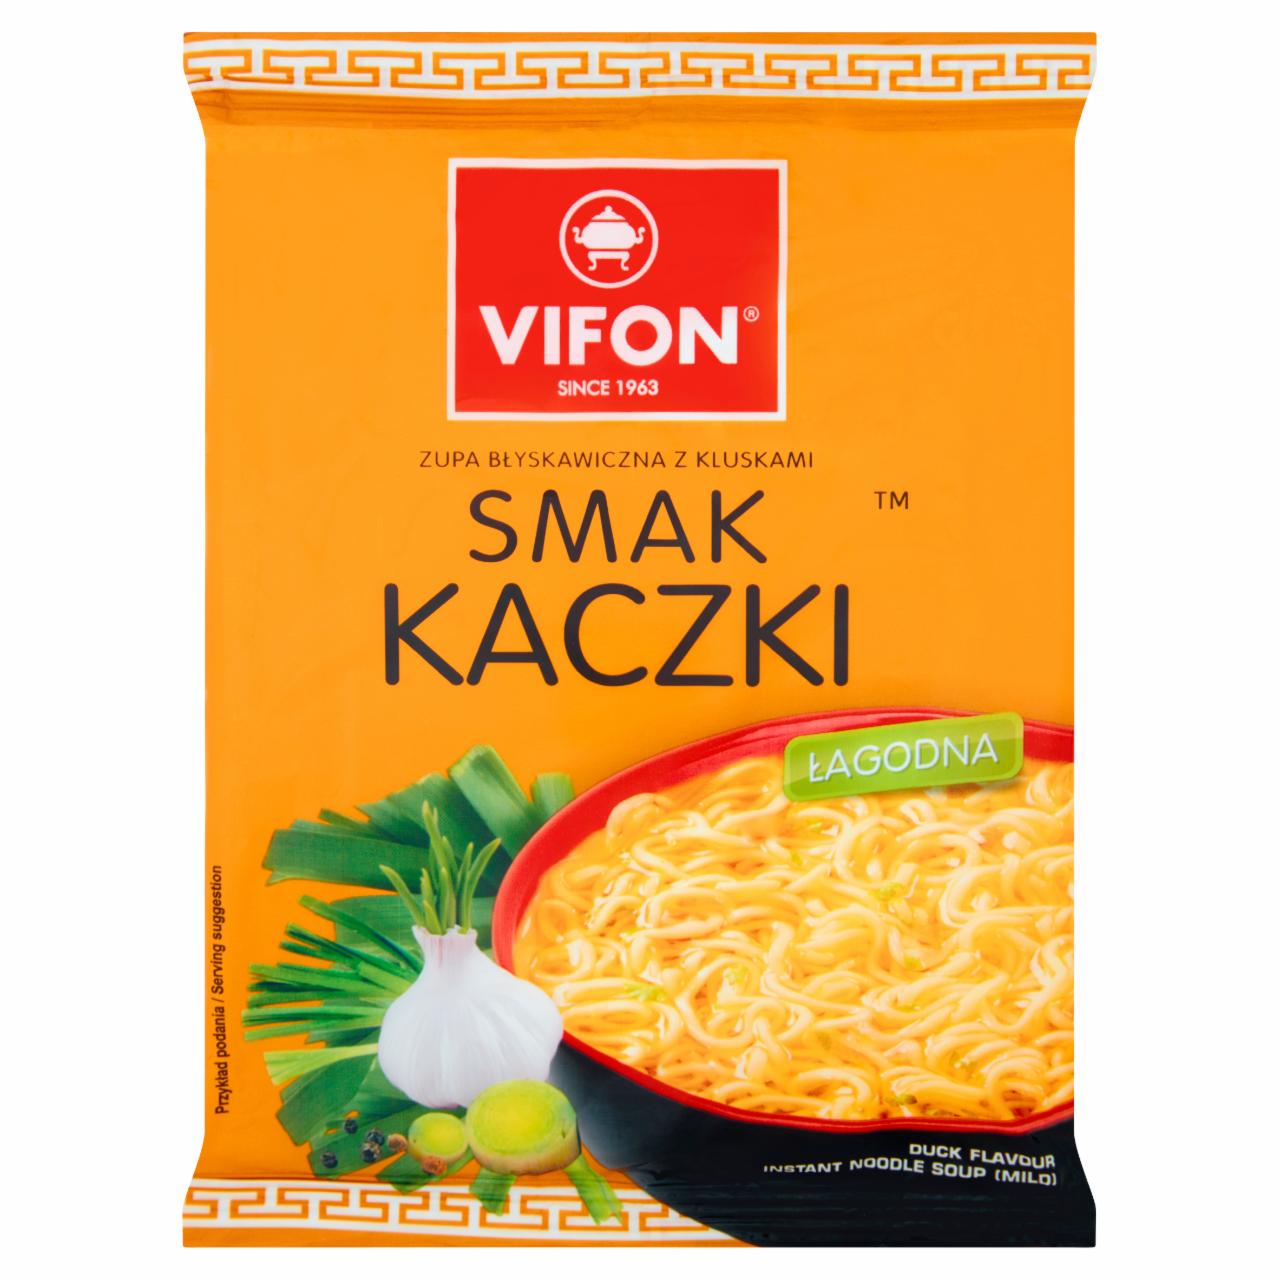 Zdjęcia - Vifon Smak kaczki Zupa błyskawiczna 70 g